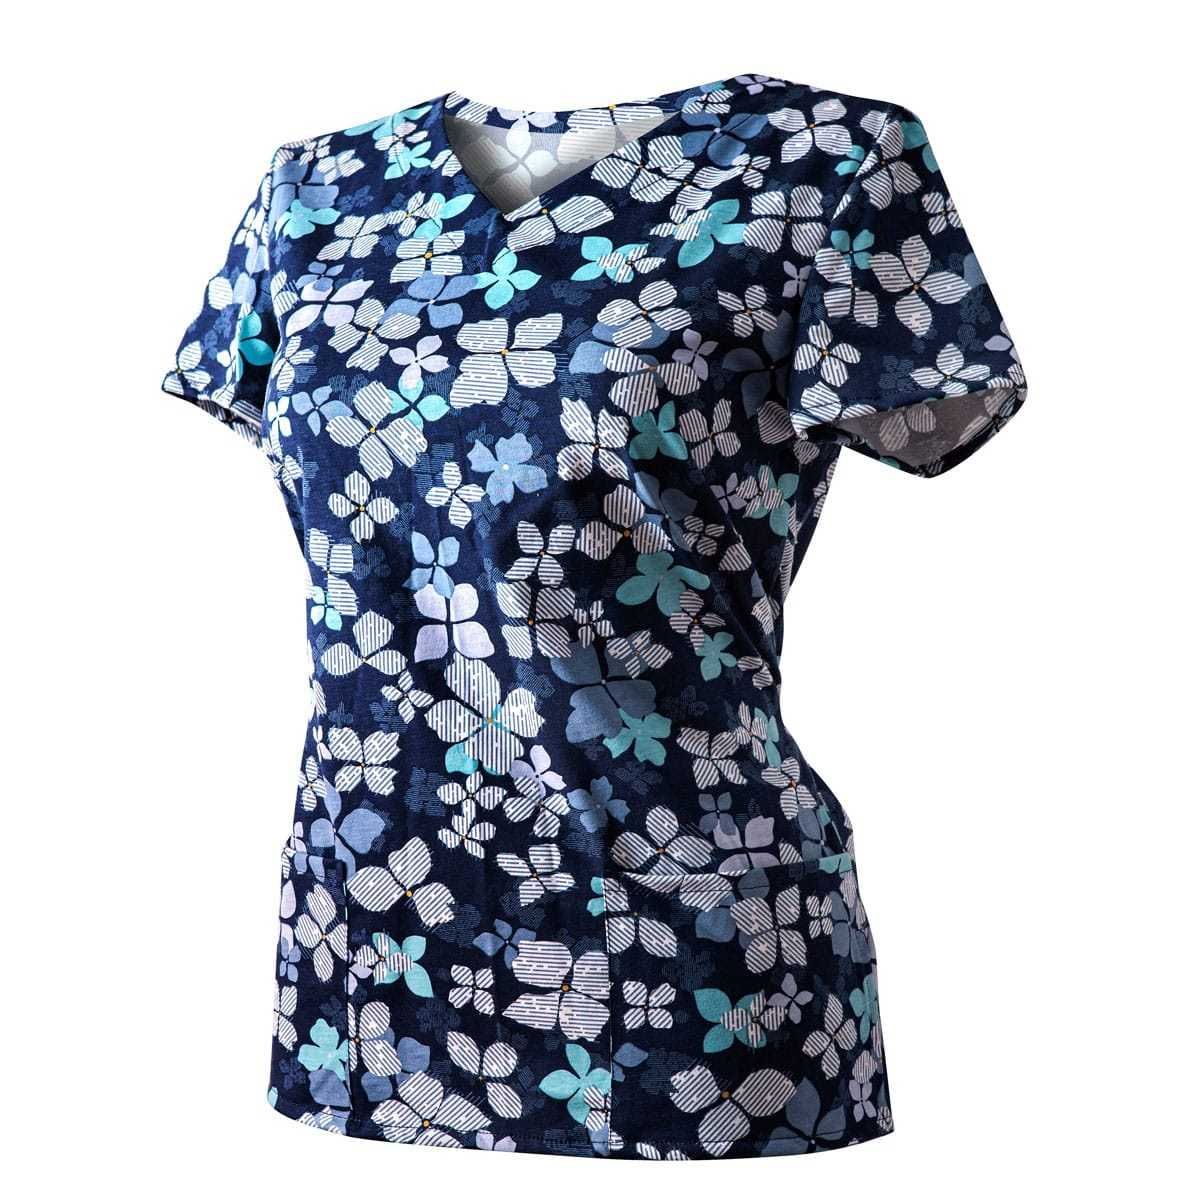 Bluza Medyczna Granatowa Koszulka Bawełniana Kwiaty niebieskie roz 50